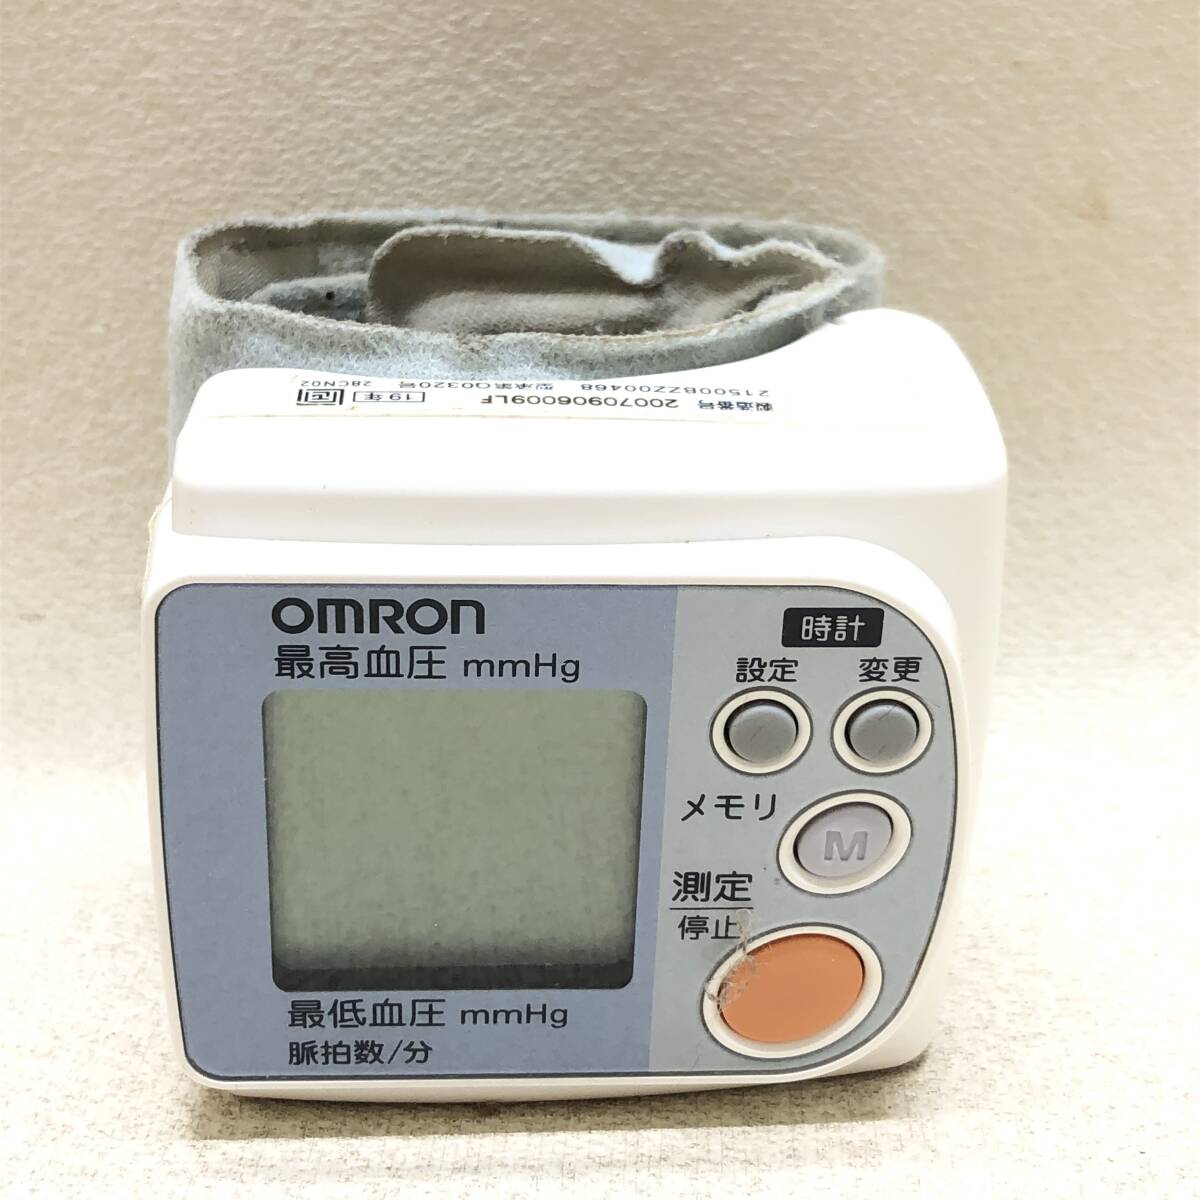 ★OMRON オムロン デジタル自動血圧計 HEM-642 自動電子血圧計 健康 健康器具 検査 測定器 動作確認済み 中古品★R01700_画像2